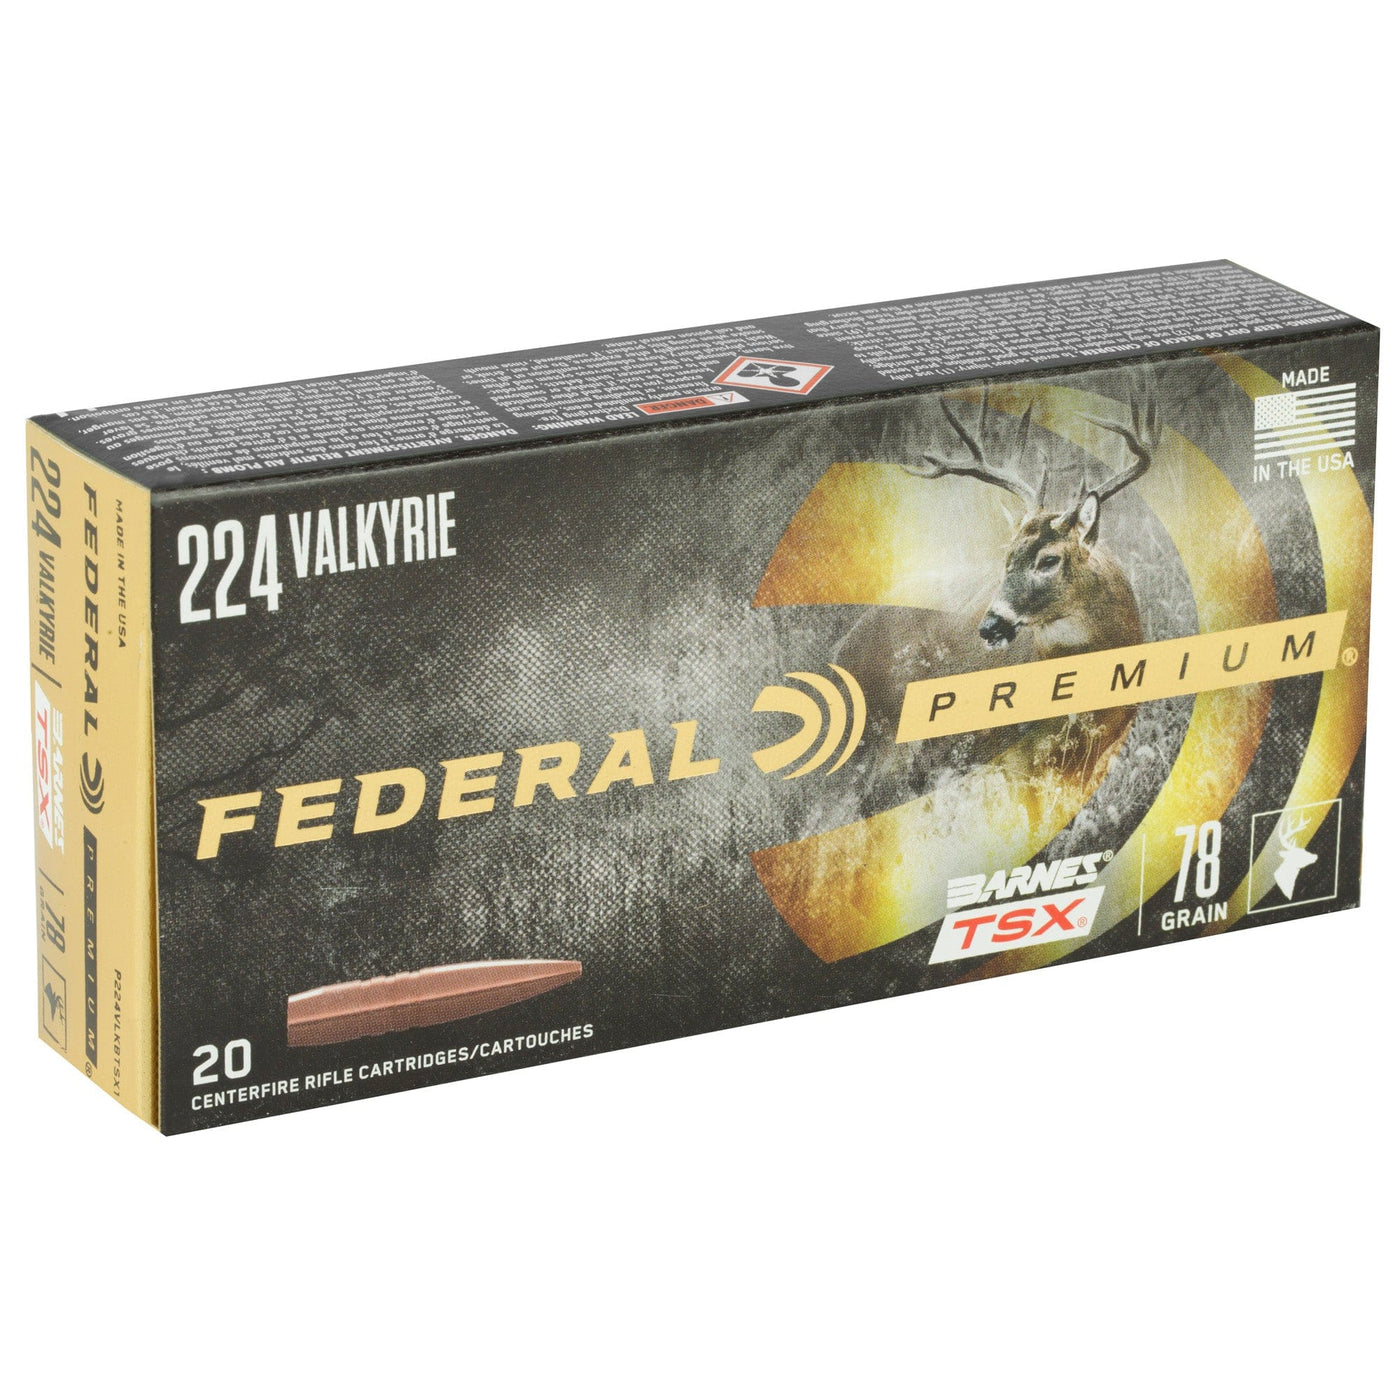 Federal Fed Prm 224vlk 78gr Brns Tsx 20/200 Ammo